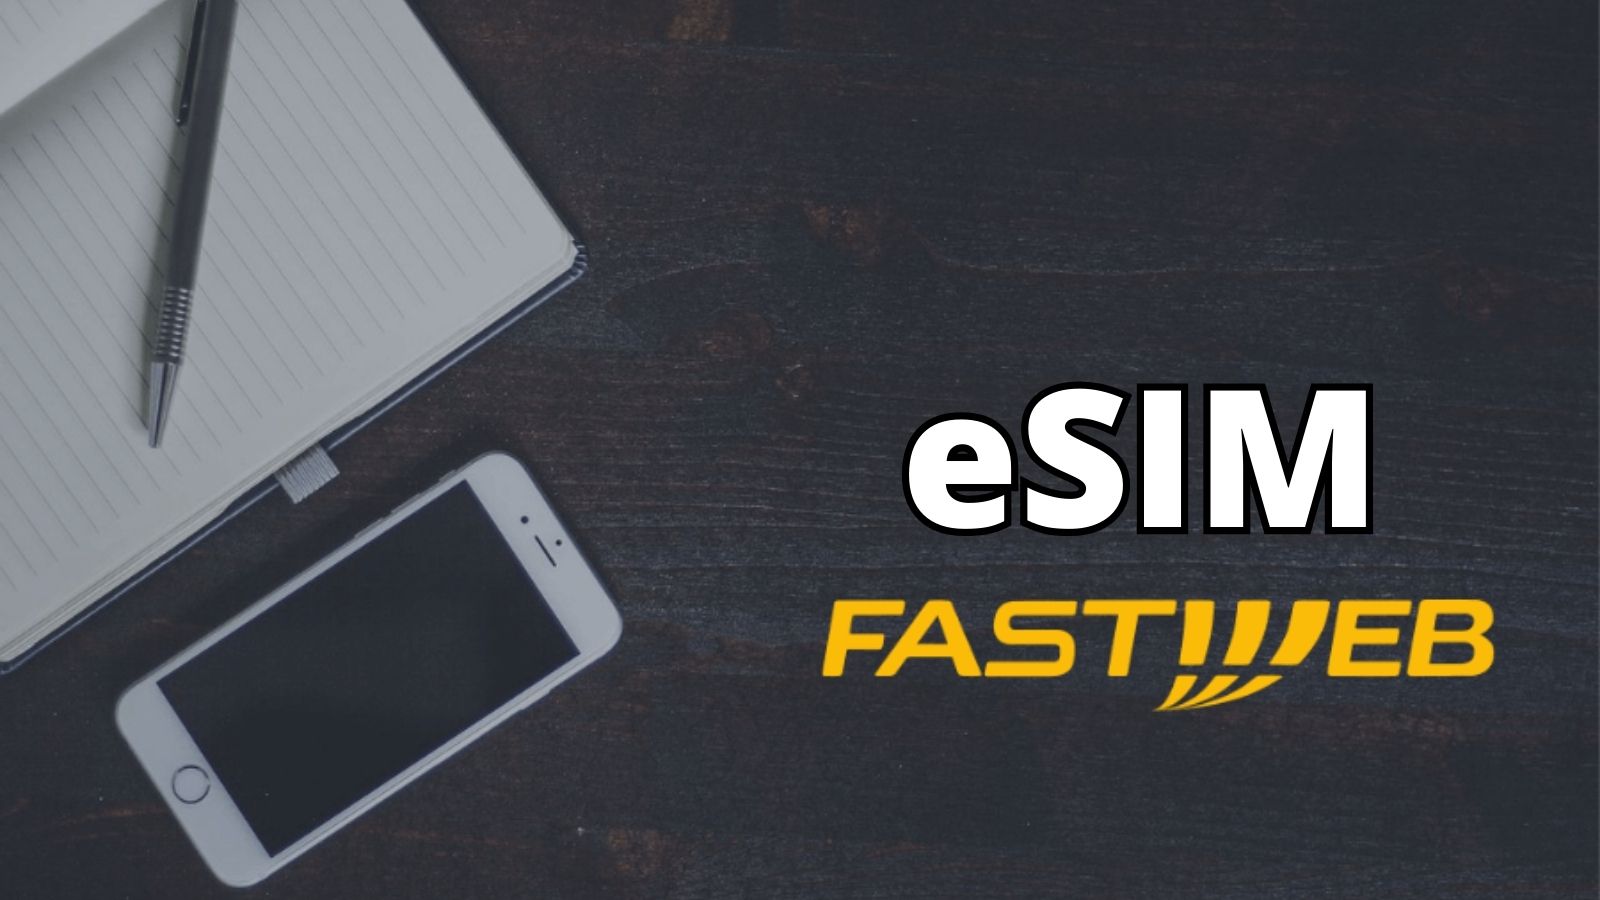 Fastweb annuncia ufficialmente le eSIM, ecco quando arriveranno